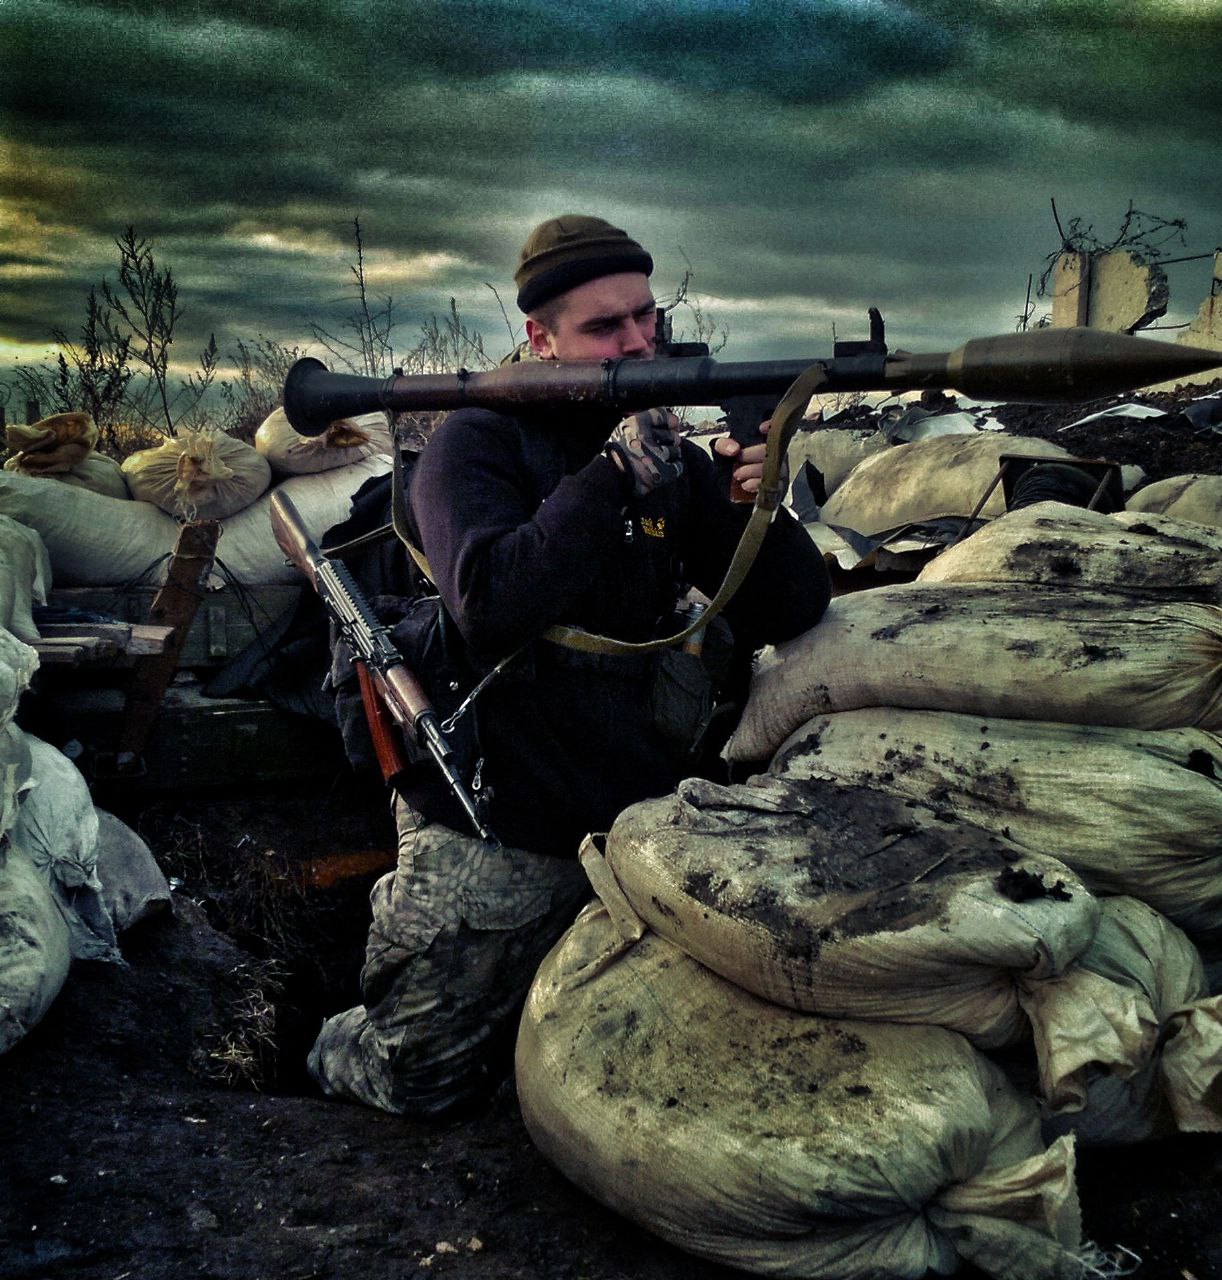 Najnovije: Rat u Ukrajini, 287. dan – Wagner u Jakovlevki; Snimak poruke ukrajinskih vojnika Zelenskom: “Moli se da Rusi stignu prije nas”